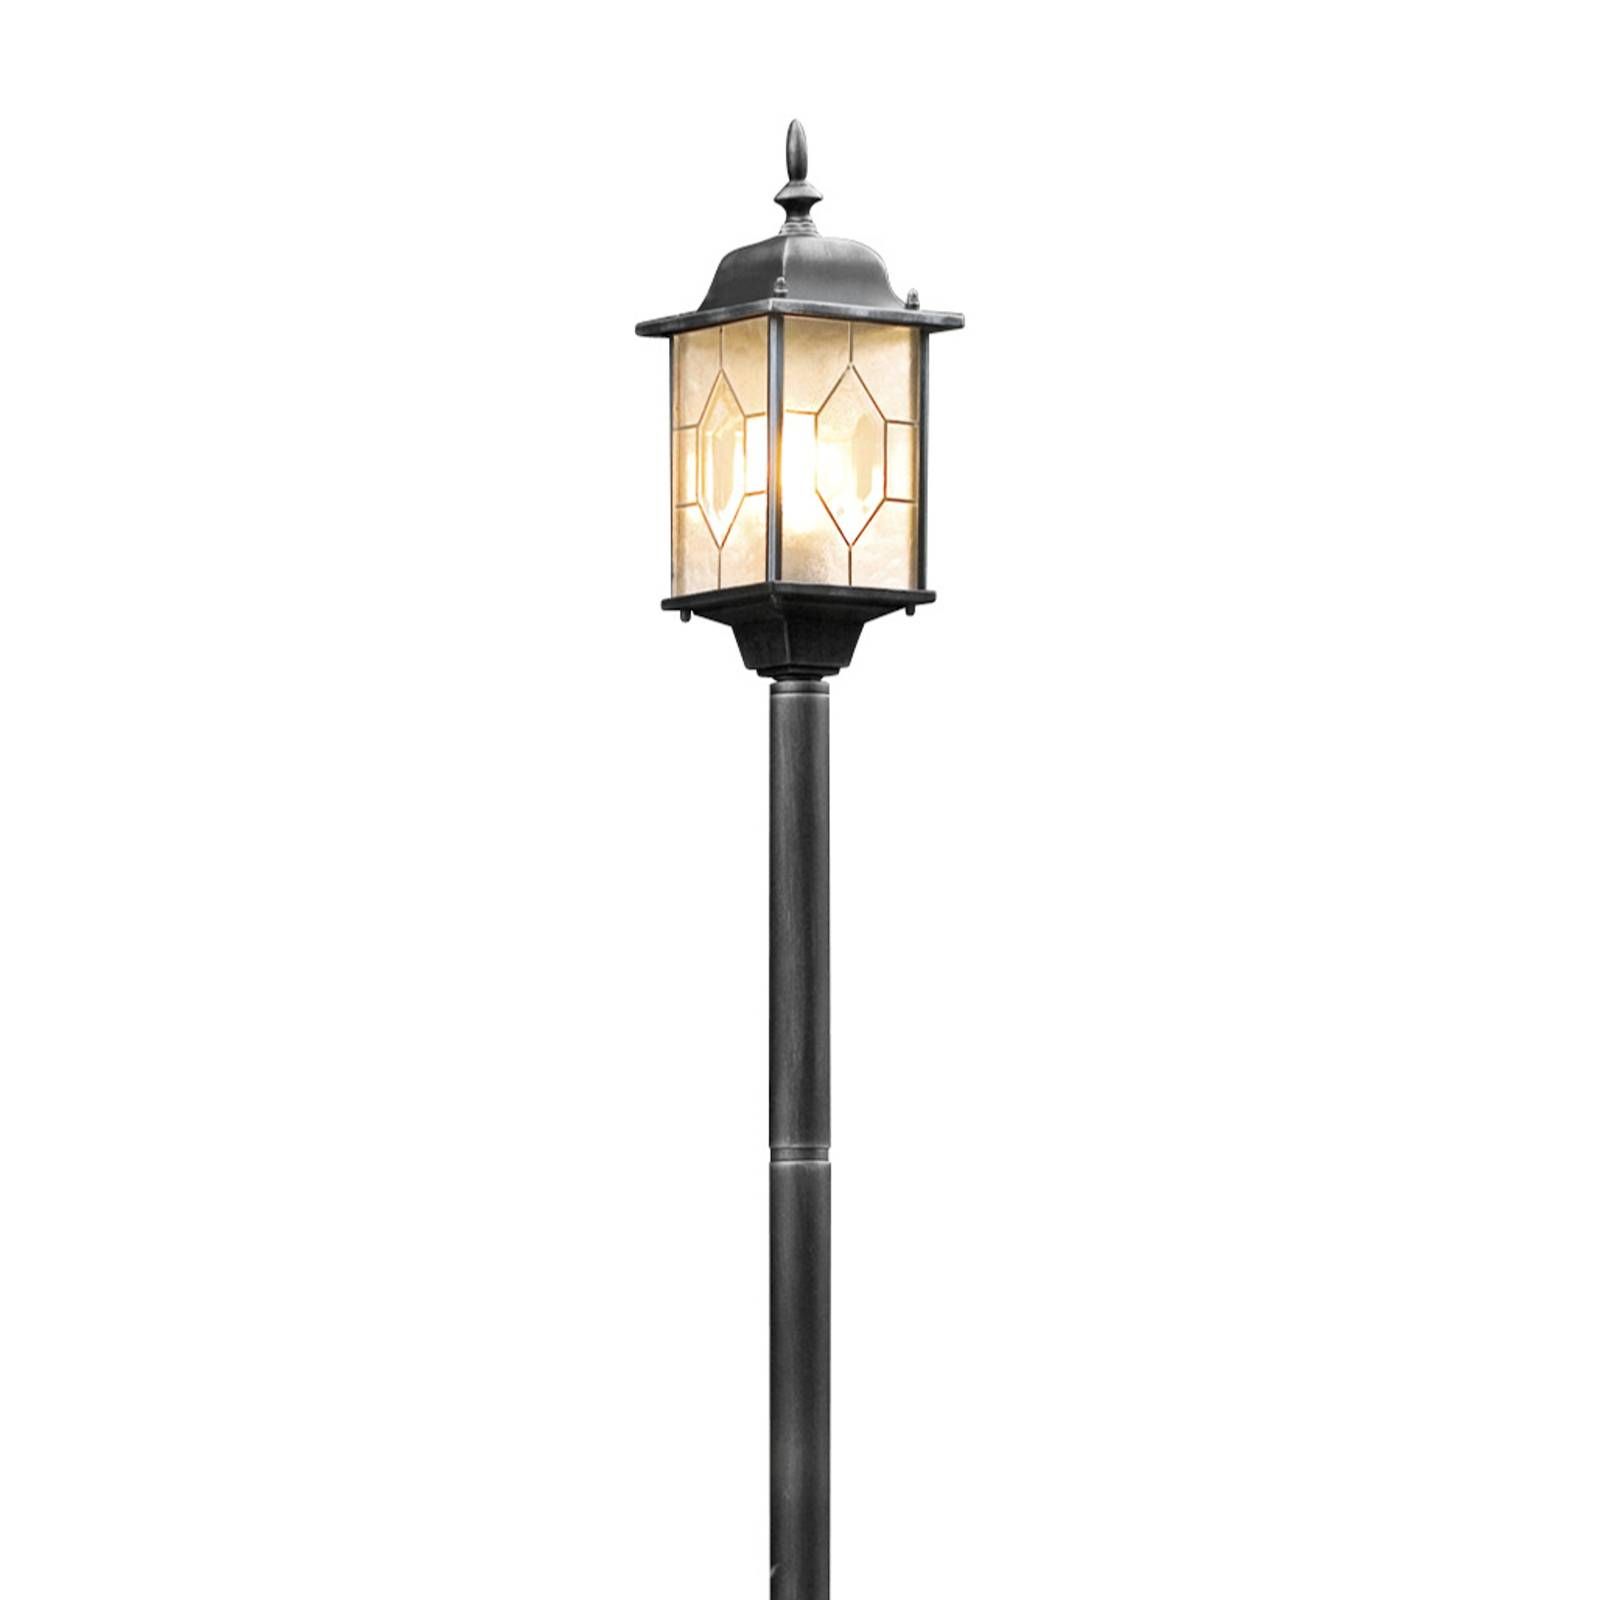 Konstsmide Chodníkové svietidlo Milano, hliník, akrylové sklo, E27, 75W, P: 16 cm, L: 16 cm, K: 115cm